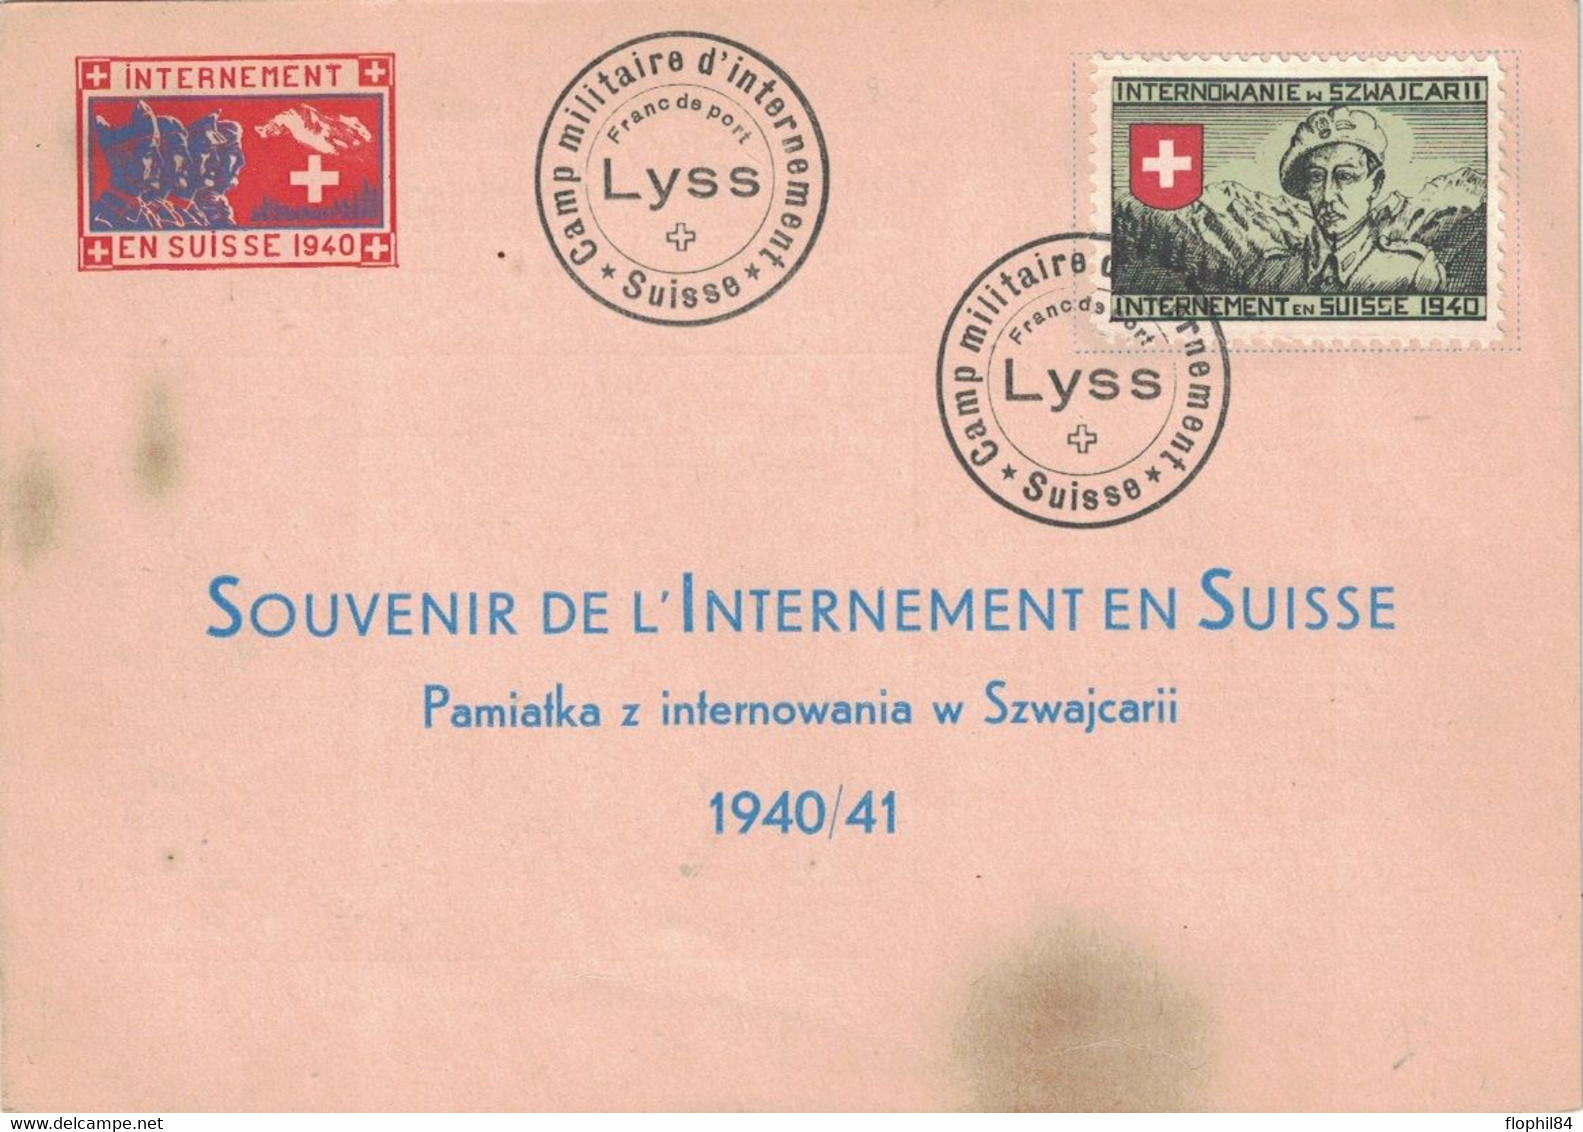 INTERNEMENT MILITAIRE EN SUISSE EN 1940 - ENVELOPPE AVEC VIGNETTE - CAMP DE LYSS. - Dokumente